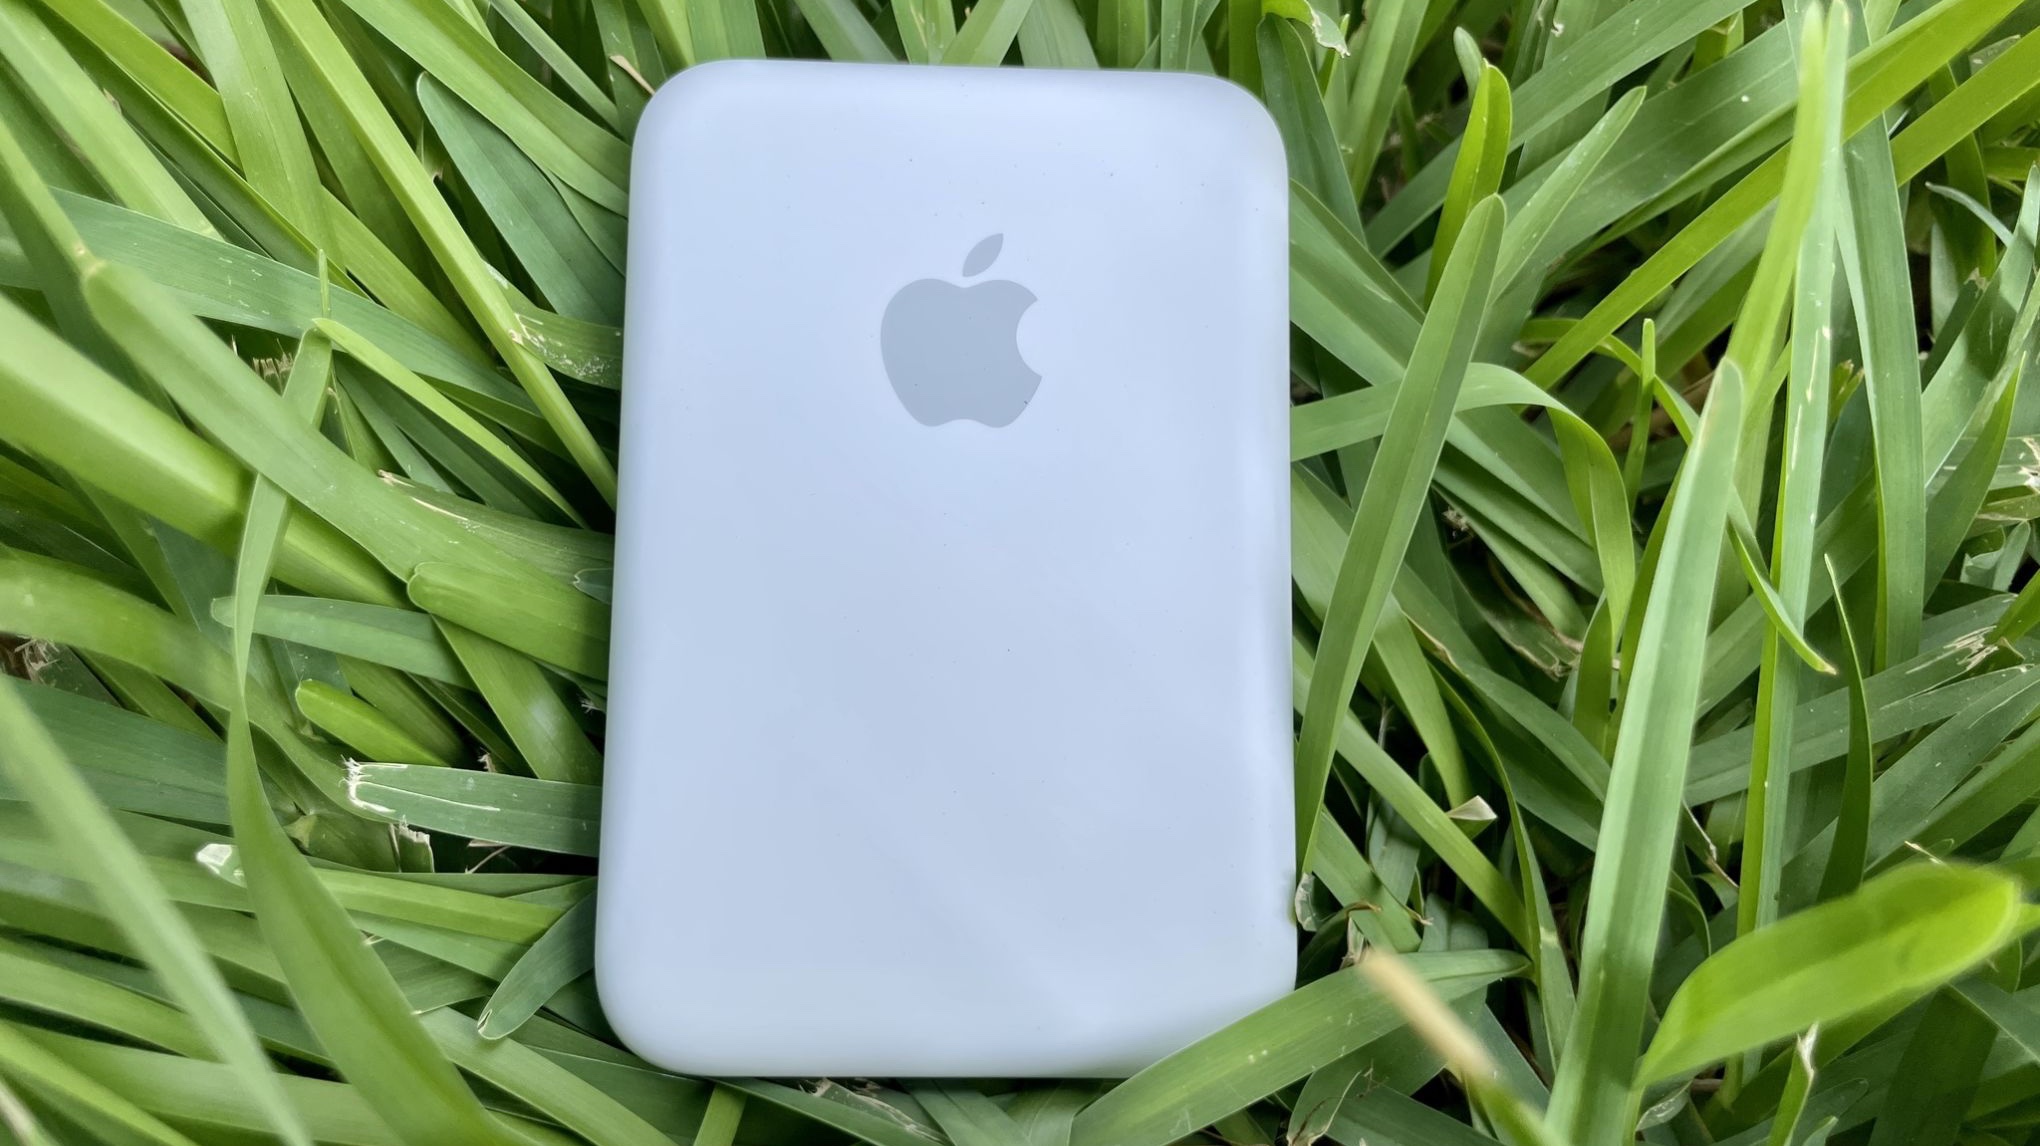 Paket Baterai MagSafe Putih dari Apple di atas rumput